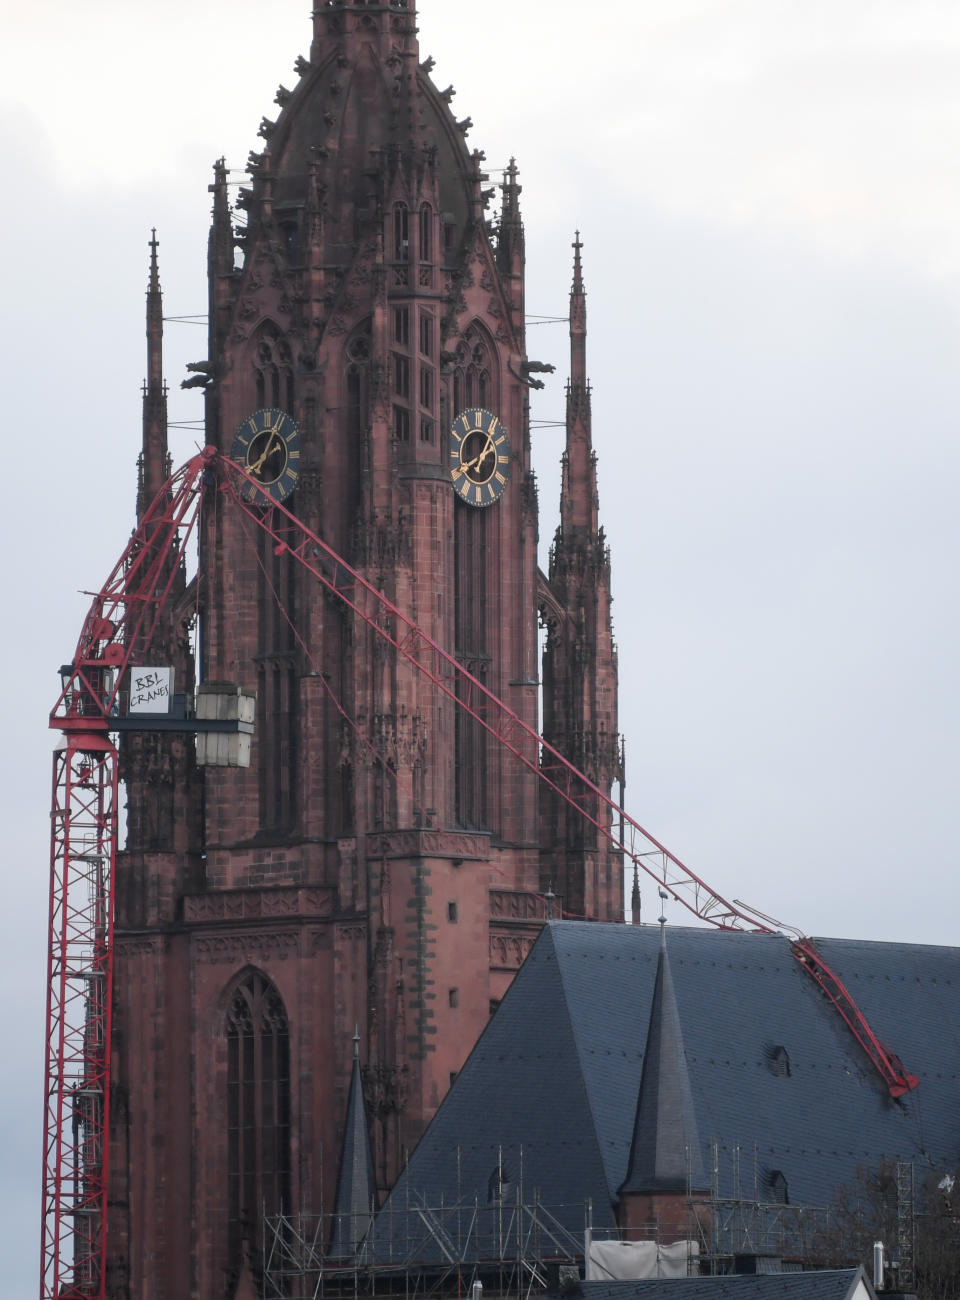 Das Dach des Frankfurter Doms wurde durch einen umgeknickten Baukran beschädigt. (Bild: Arne Dedert/dpa)